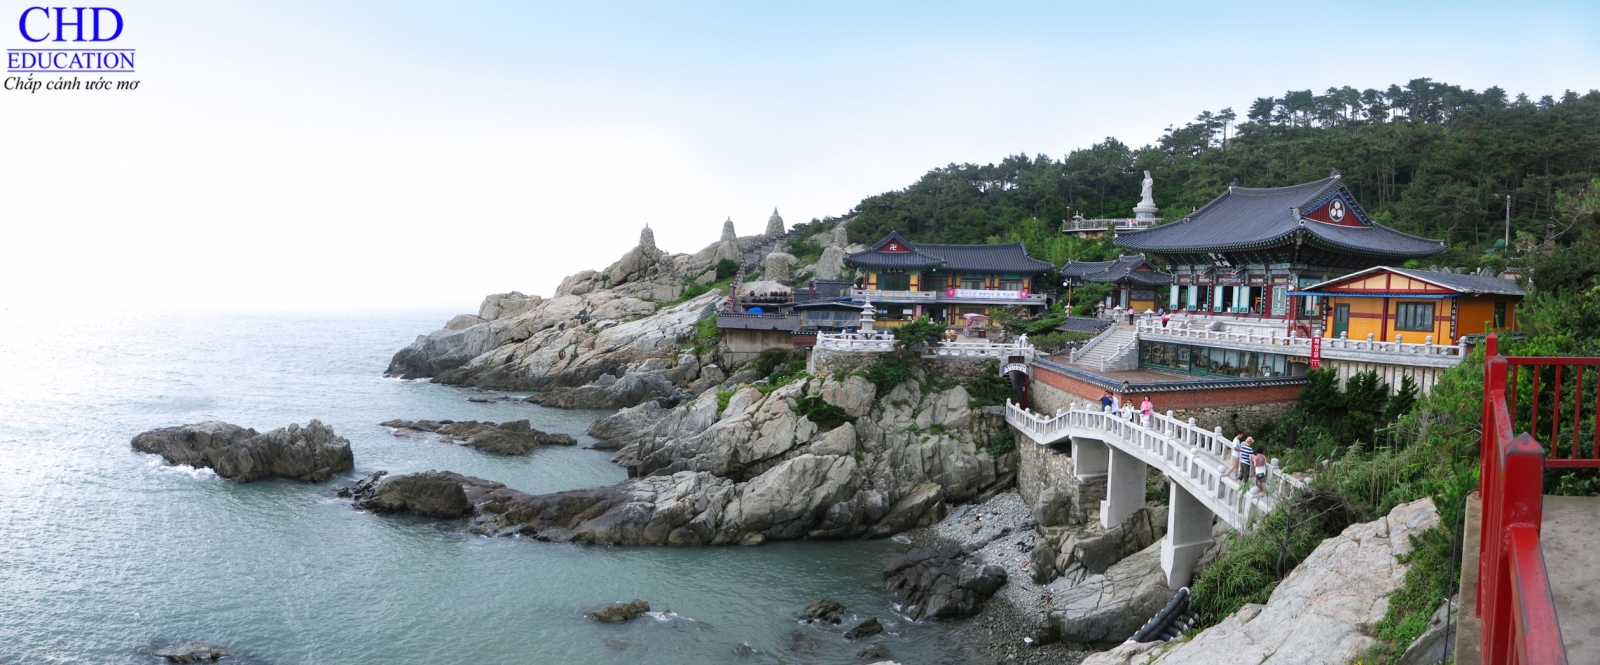 Du học Hàn Quốc - Khám phá đển chùa cổ kính tại Busan